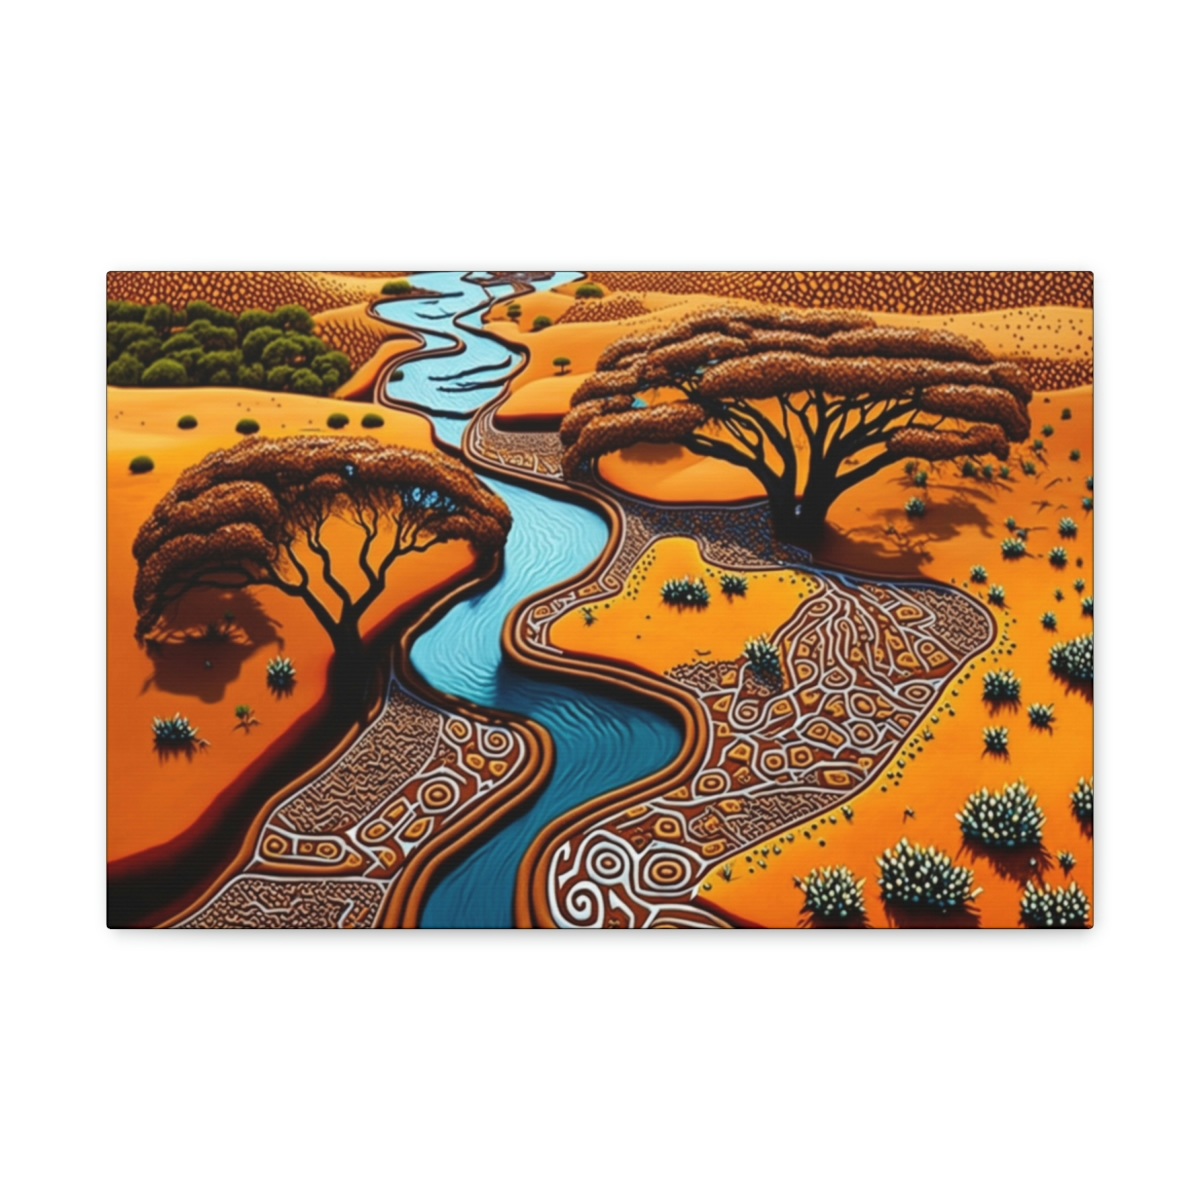 African Patterns Canvas Print: The Kalahari River Oasis